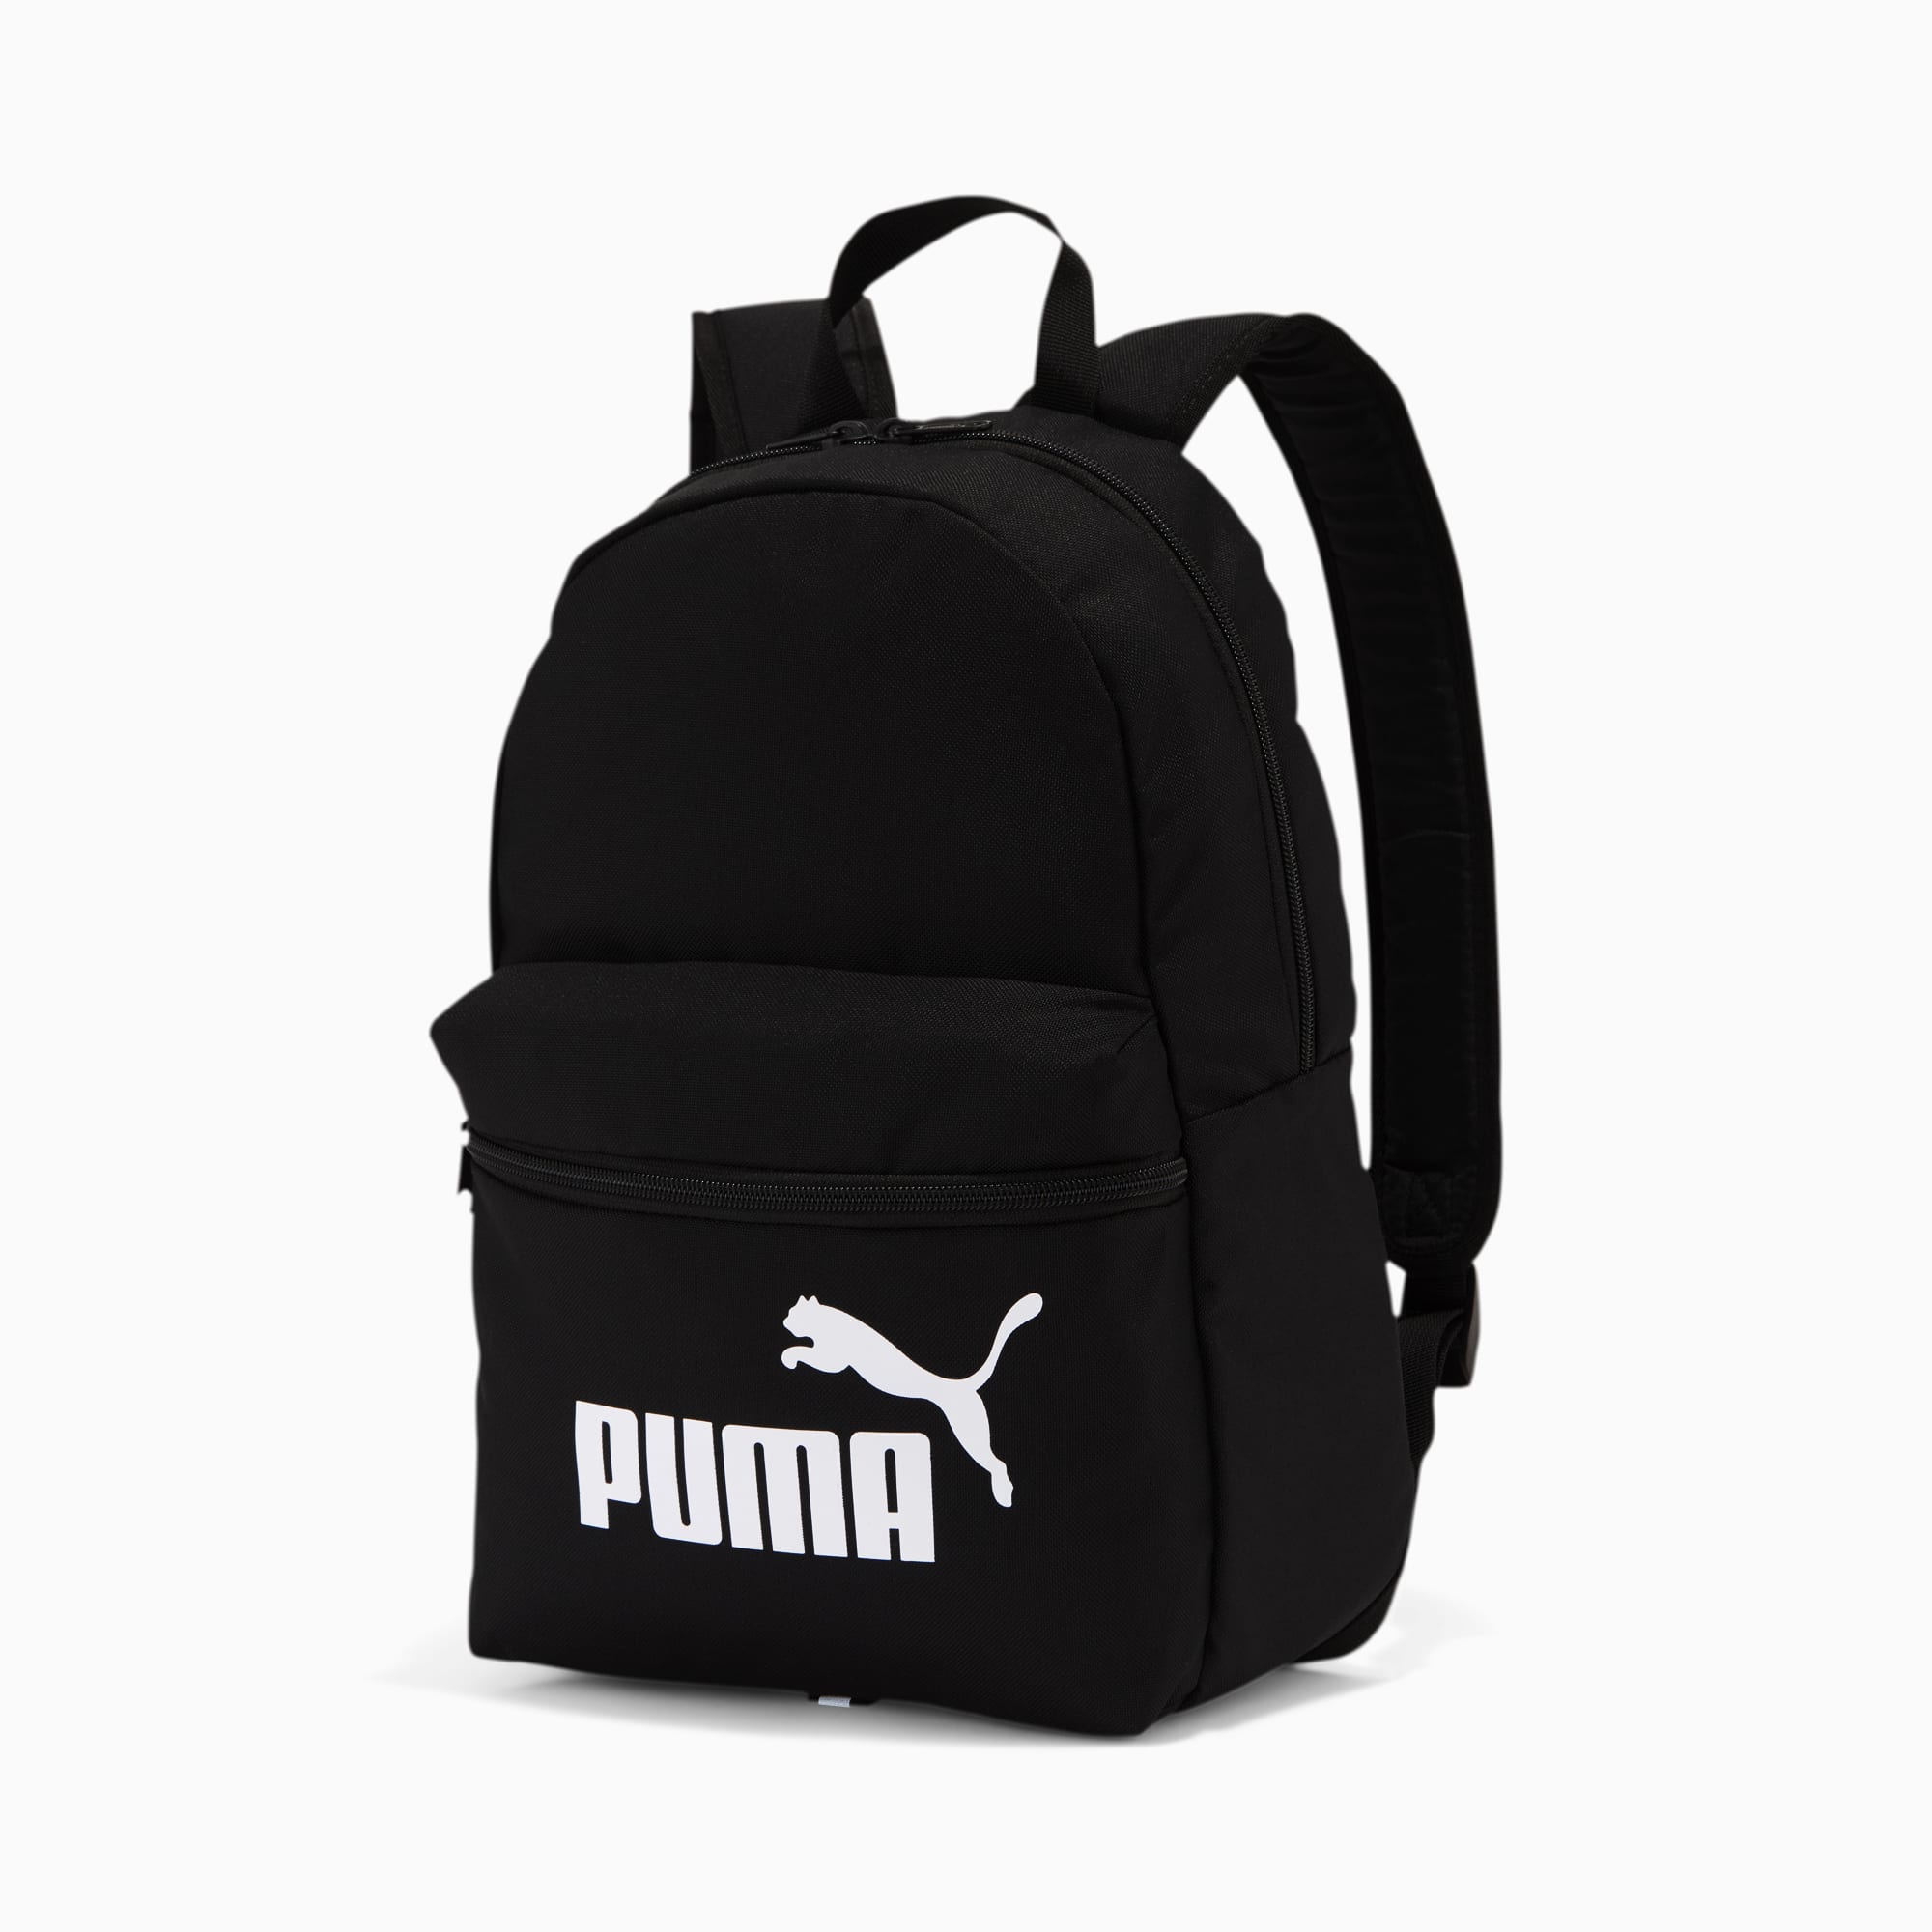 puma backpack black and white